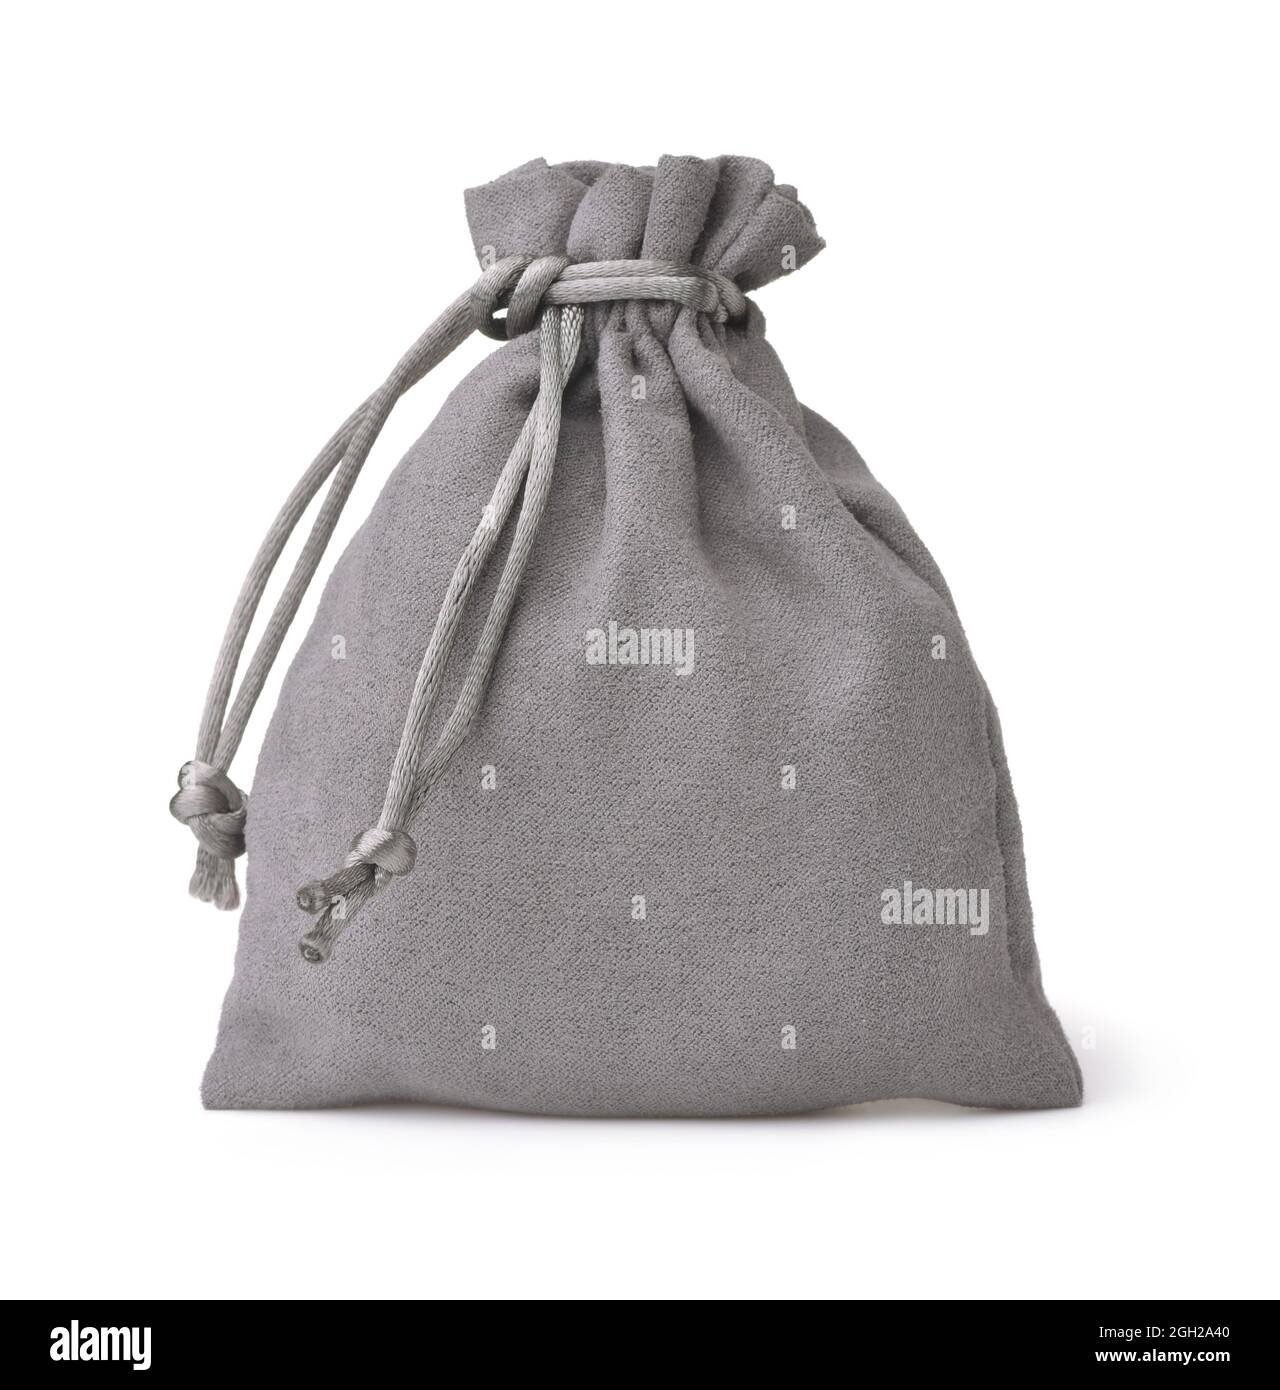 Vista frontale della borsa regalo con coulisse in tessuto grigio isolata su bianco Foto Stock